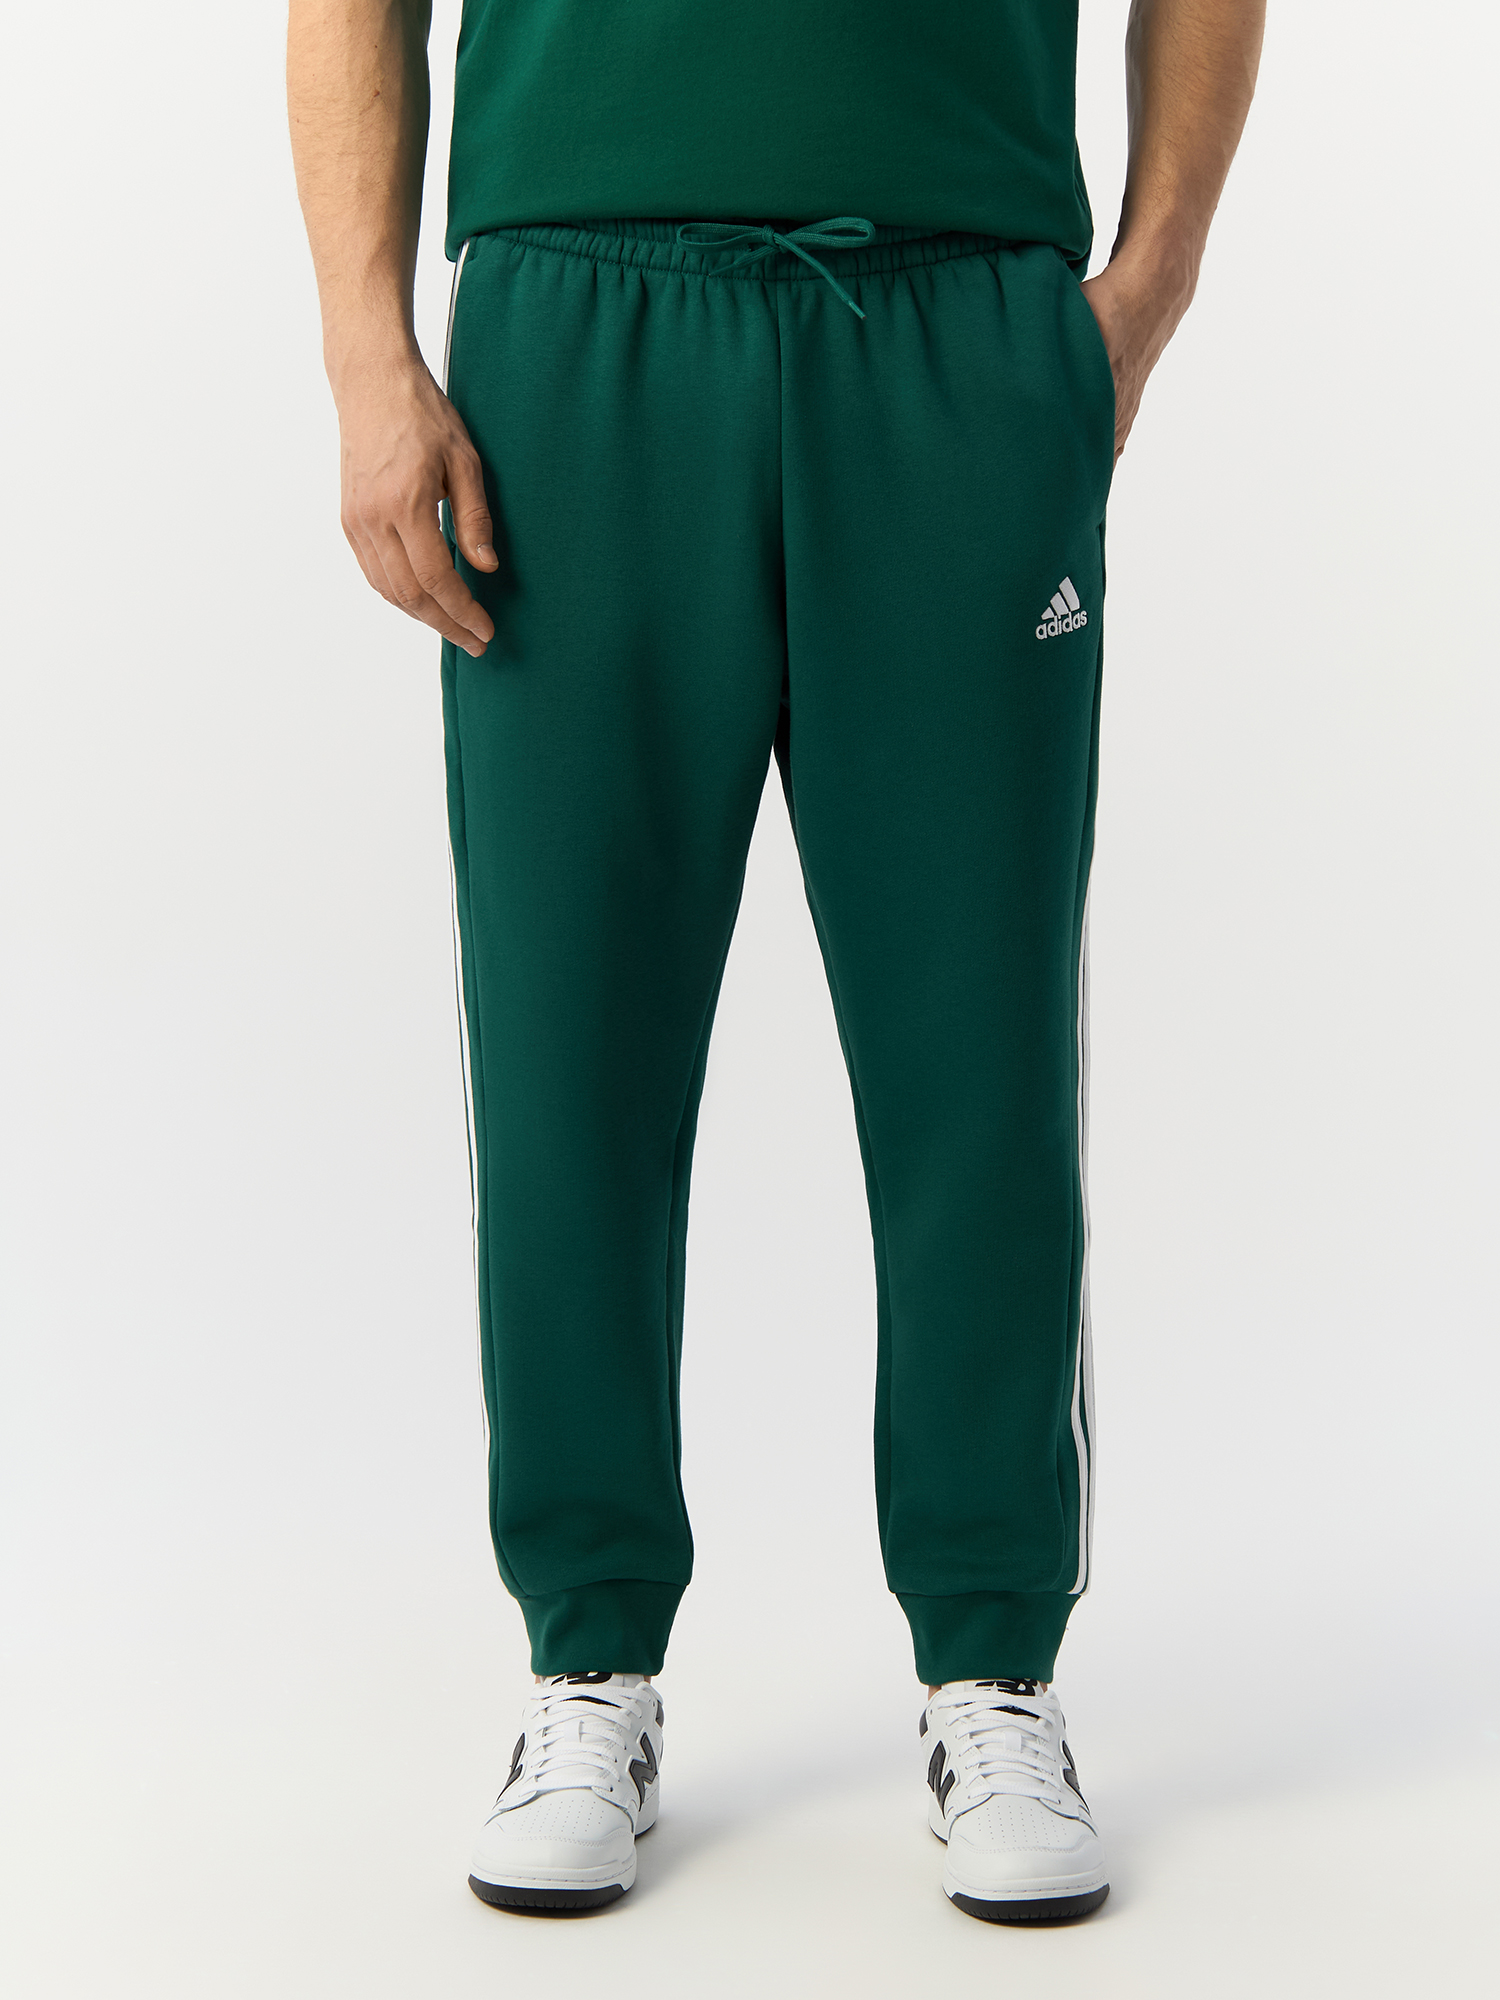 Брюки Adidas для мужчин, спортивные, IN0342, размер XL/S, зелёные-024A